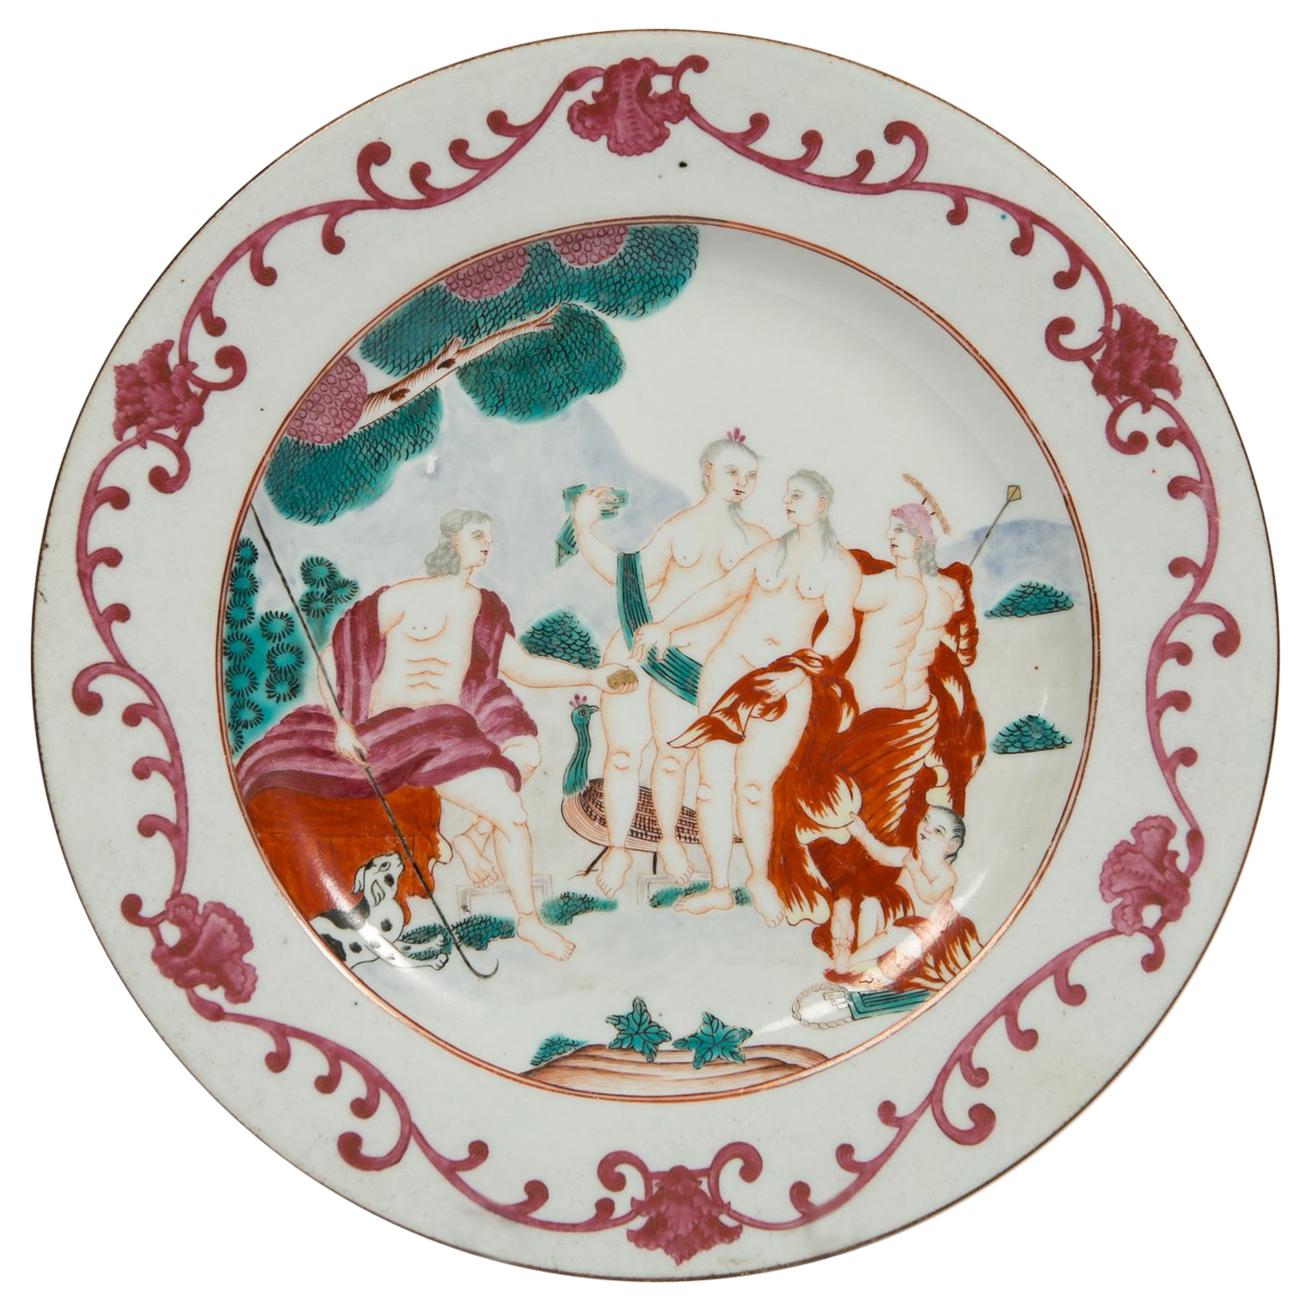 Chinesischer Export-Porzellanteller Judgement of Paris, hergestellt um 1750